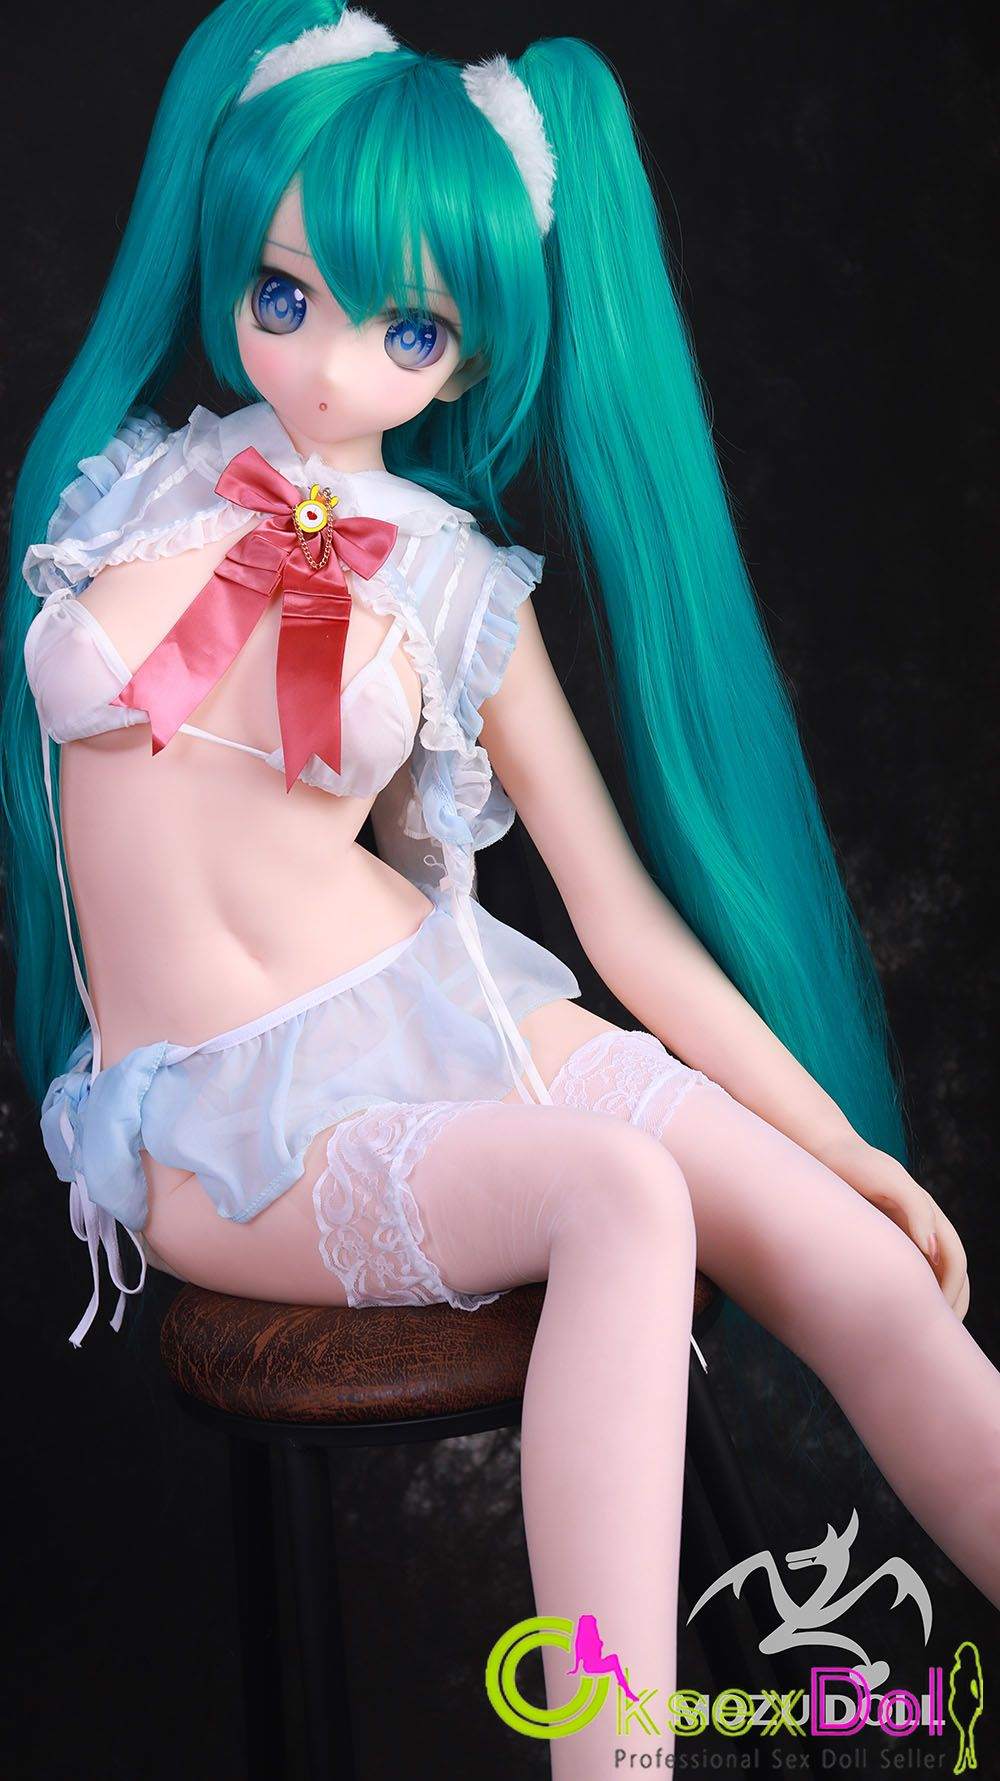 Anime TPE Sex Doll Photos